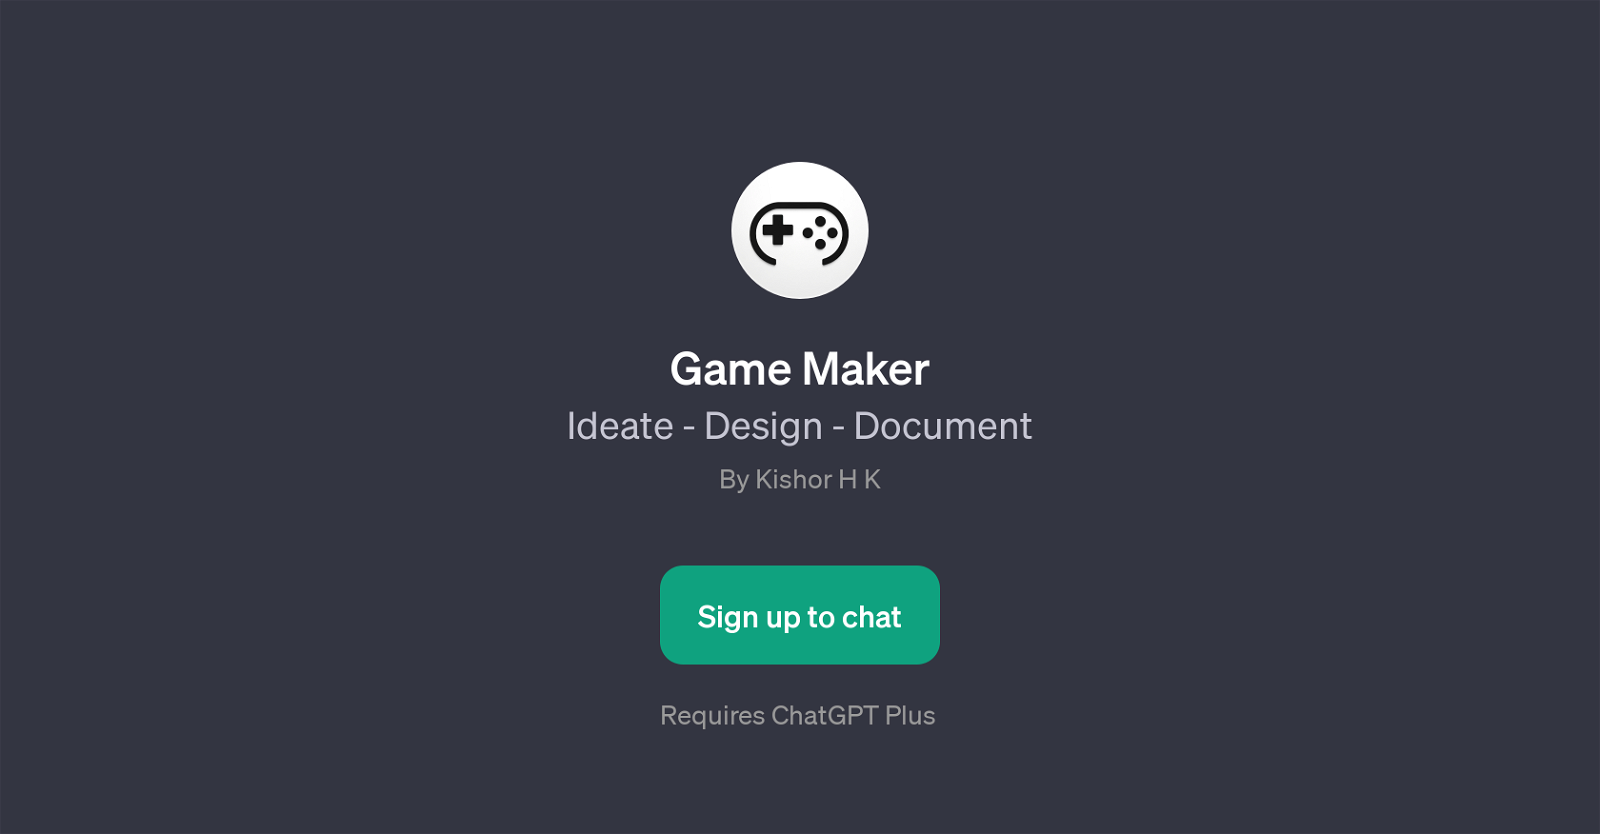 Game Maker website